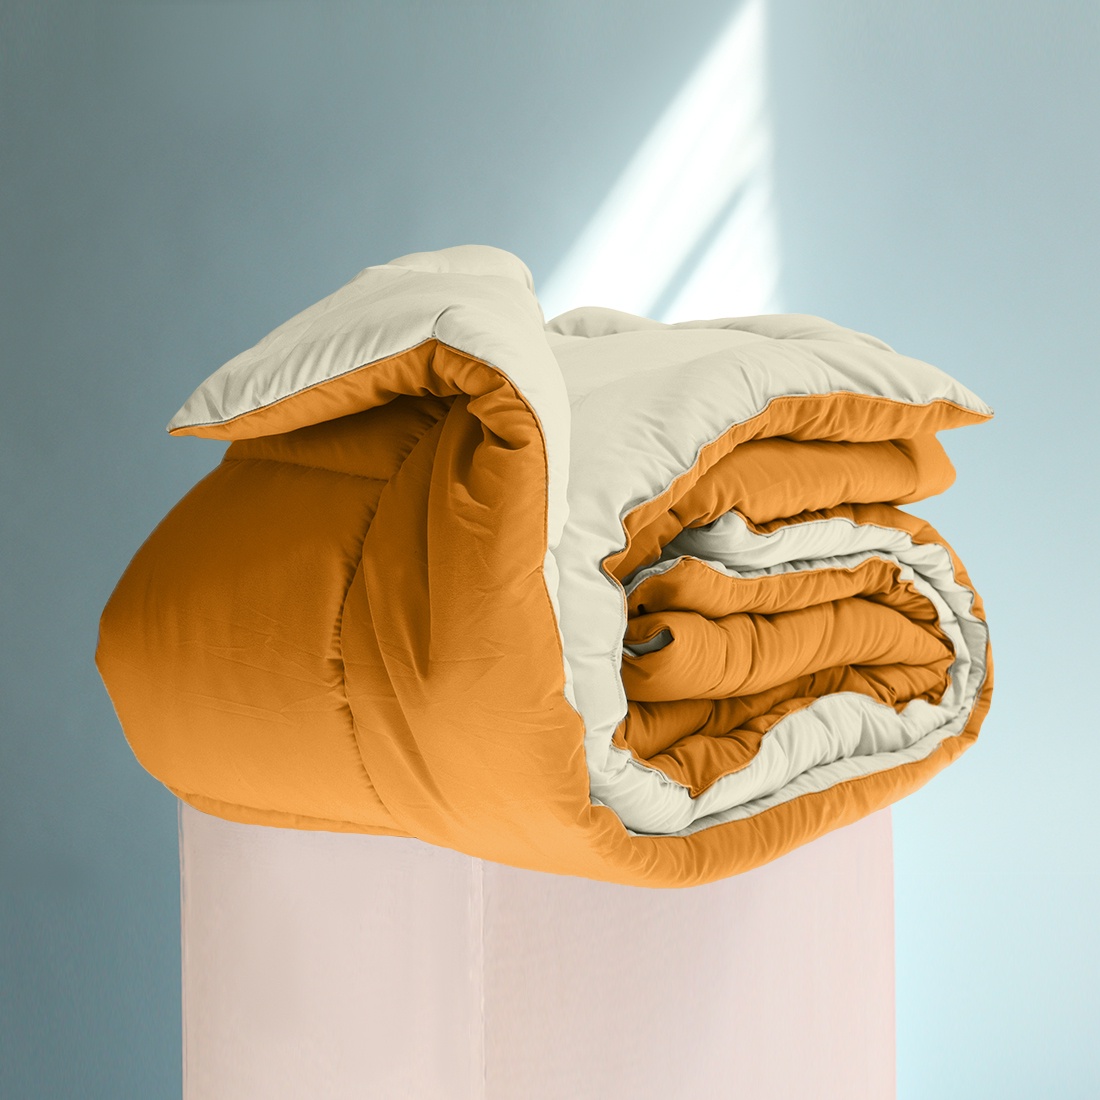 фото Одеяло "SleepiX", Мультиколор, цвет: кремовый, оранжевый, 220х240 см Sleep ix